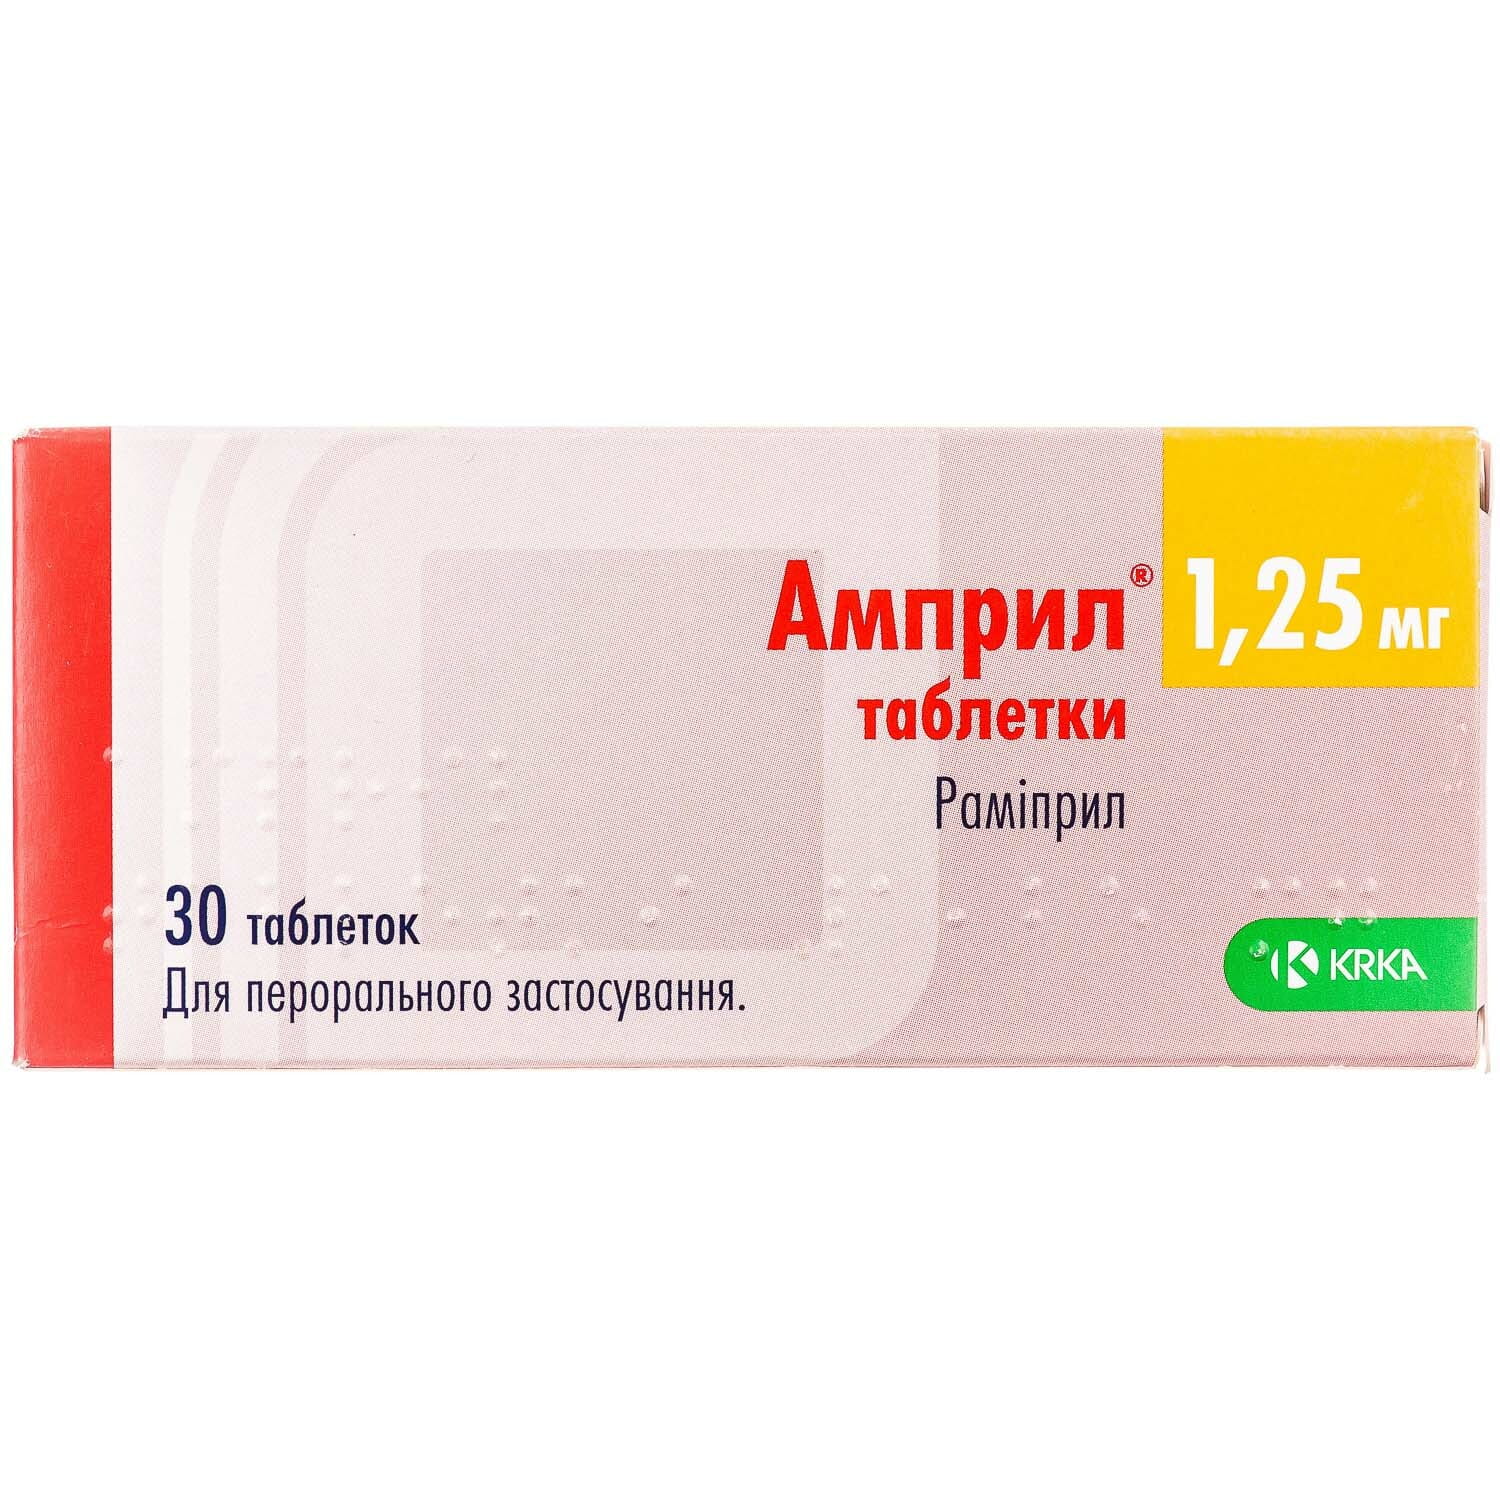 Амприл таблетки по 1,25 мг 3 блистера по 10 шт (3838989535544) КРКА (Словения) - инструкция, купить по низкой цене в Украине | Аналоги, отзывы - МИС Аптека 9-1-1